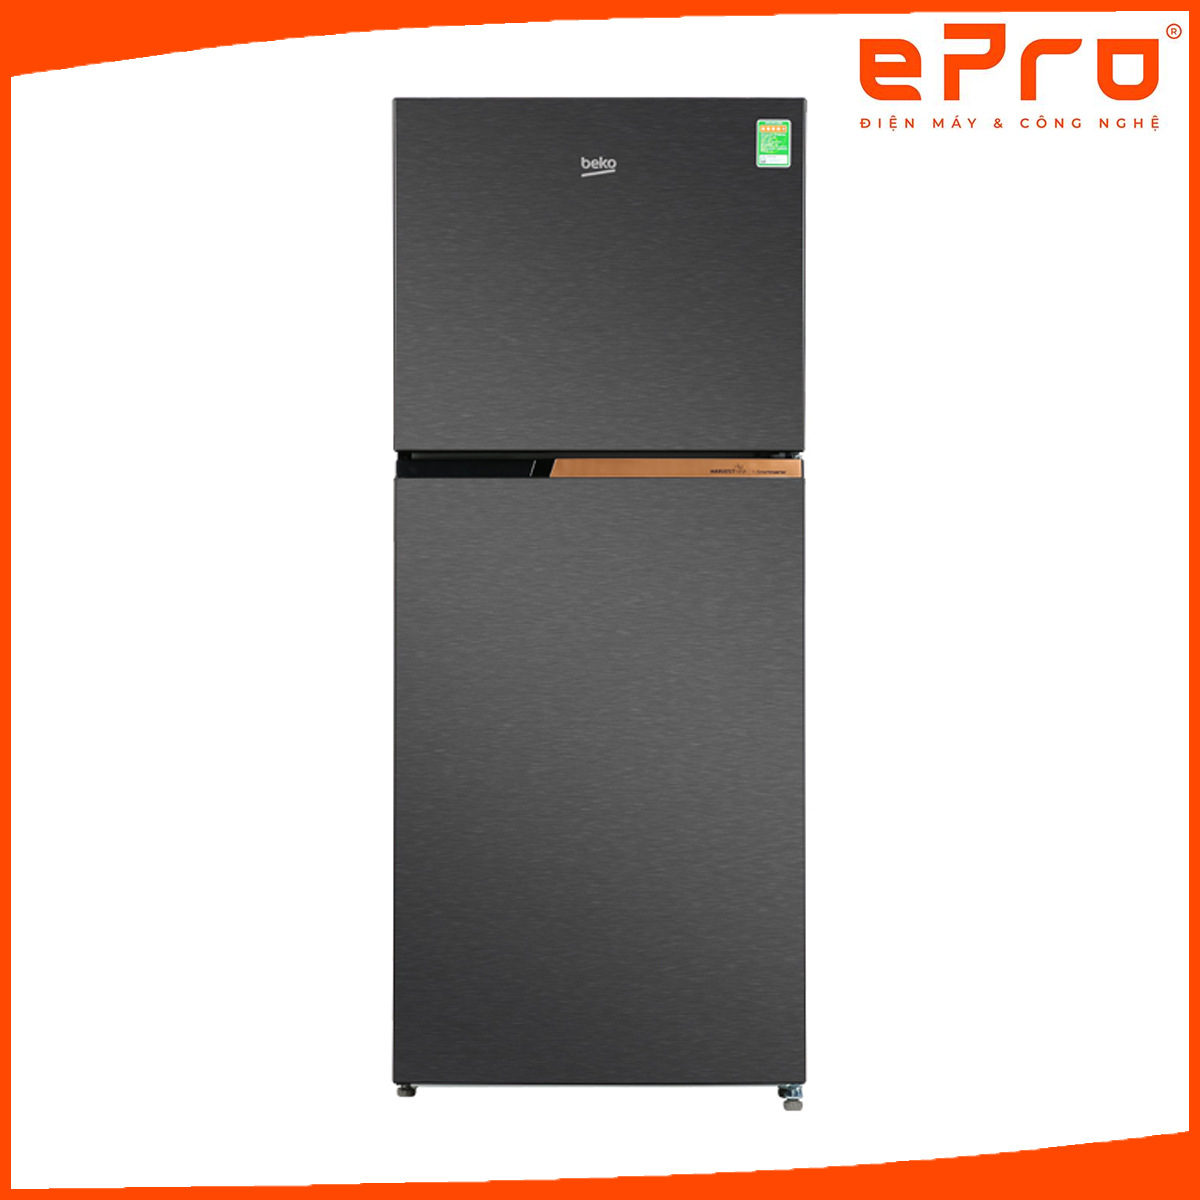 Tủ lạnh Beko Inverter 340 lít RDNT371I50VK - Hàng chính hãng - Giao HCM và 1 số tỉnh thành